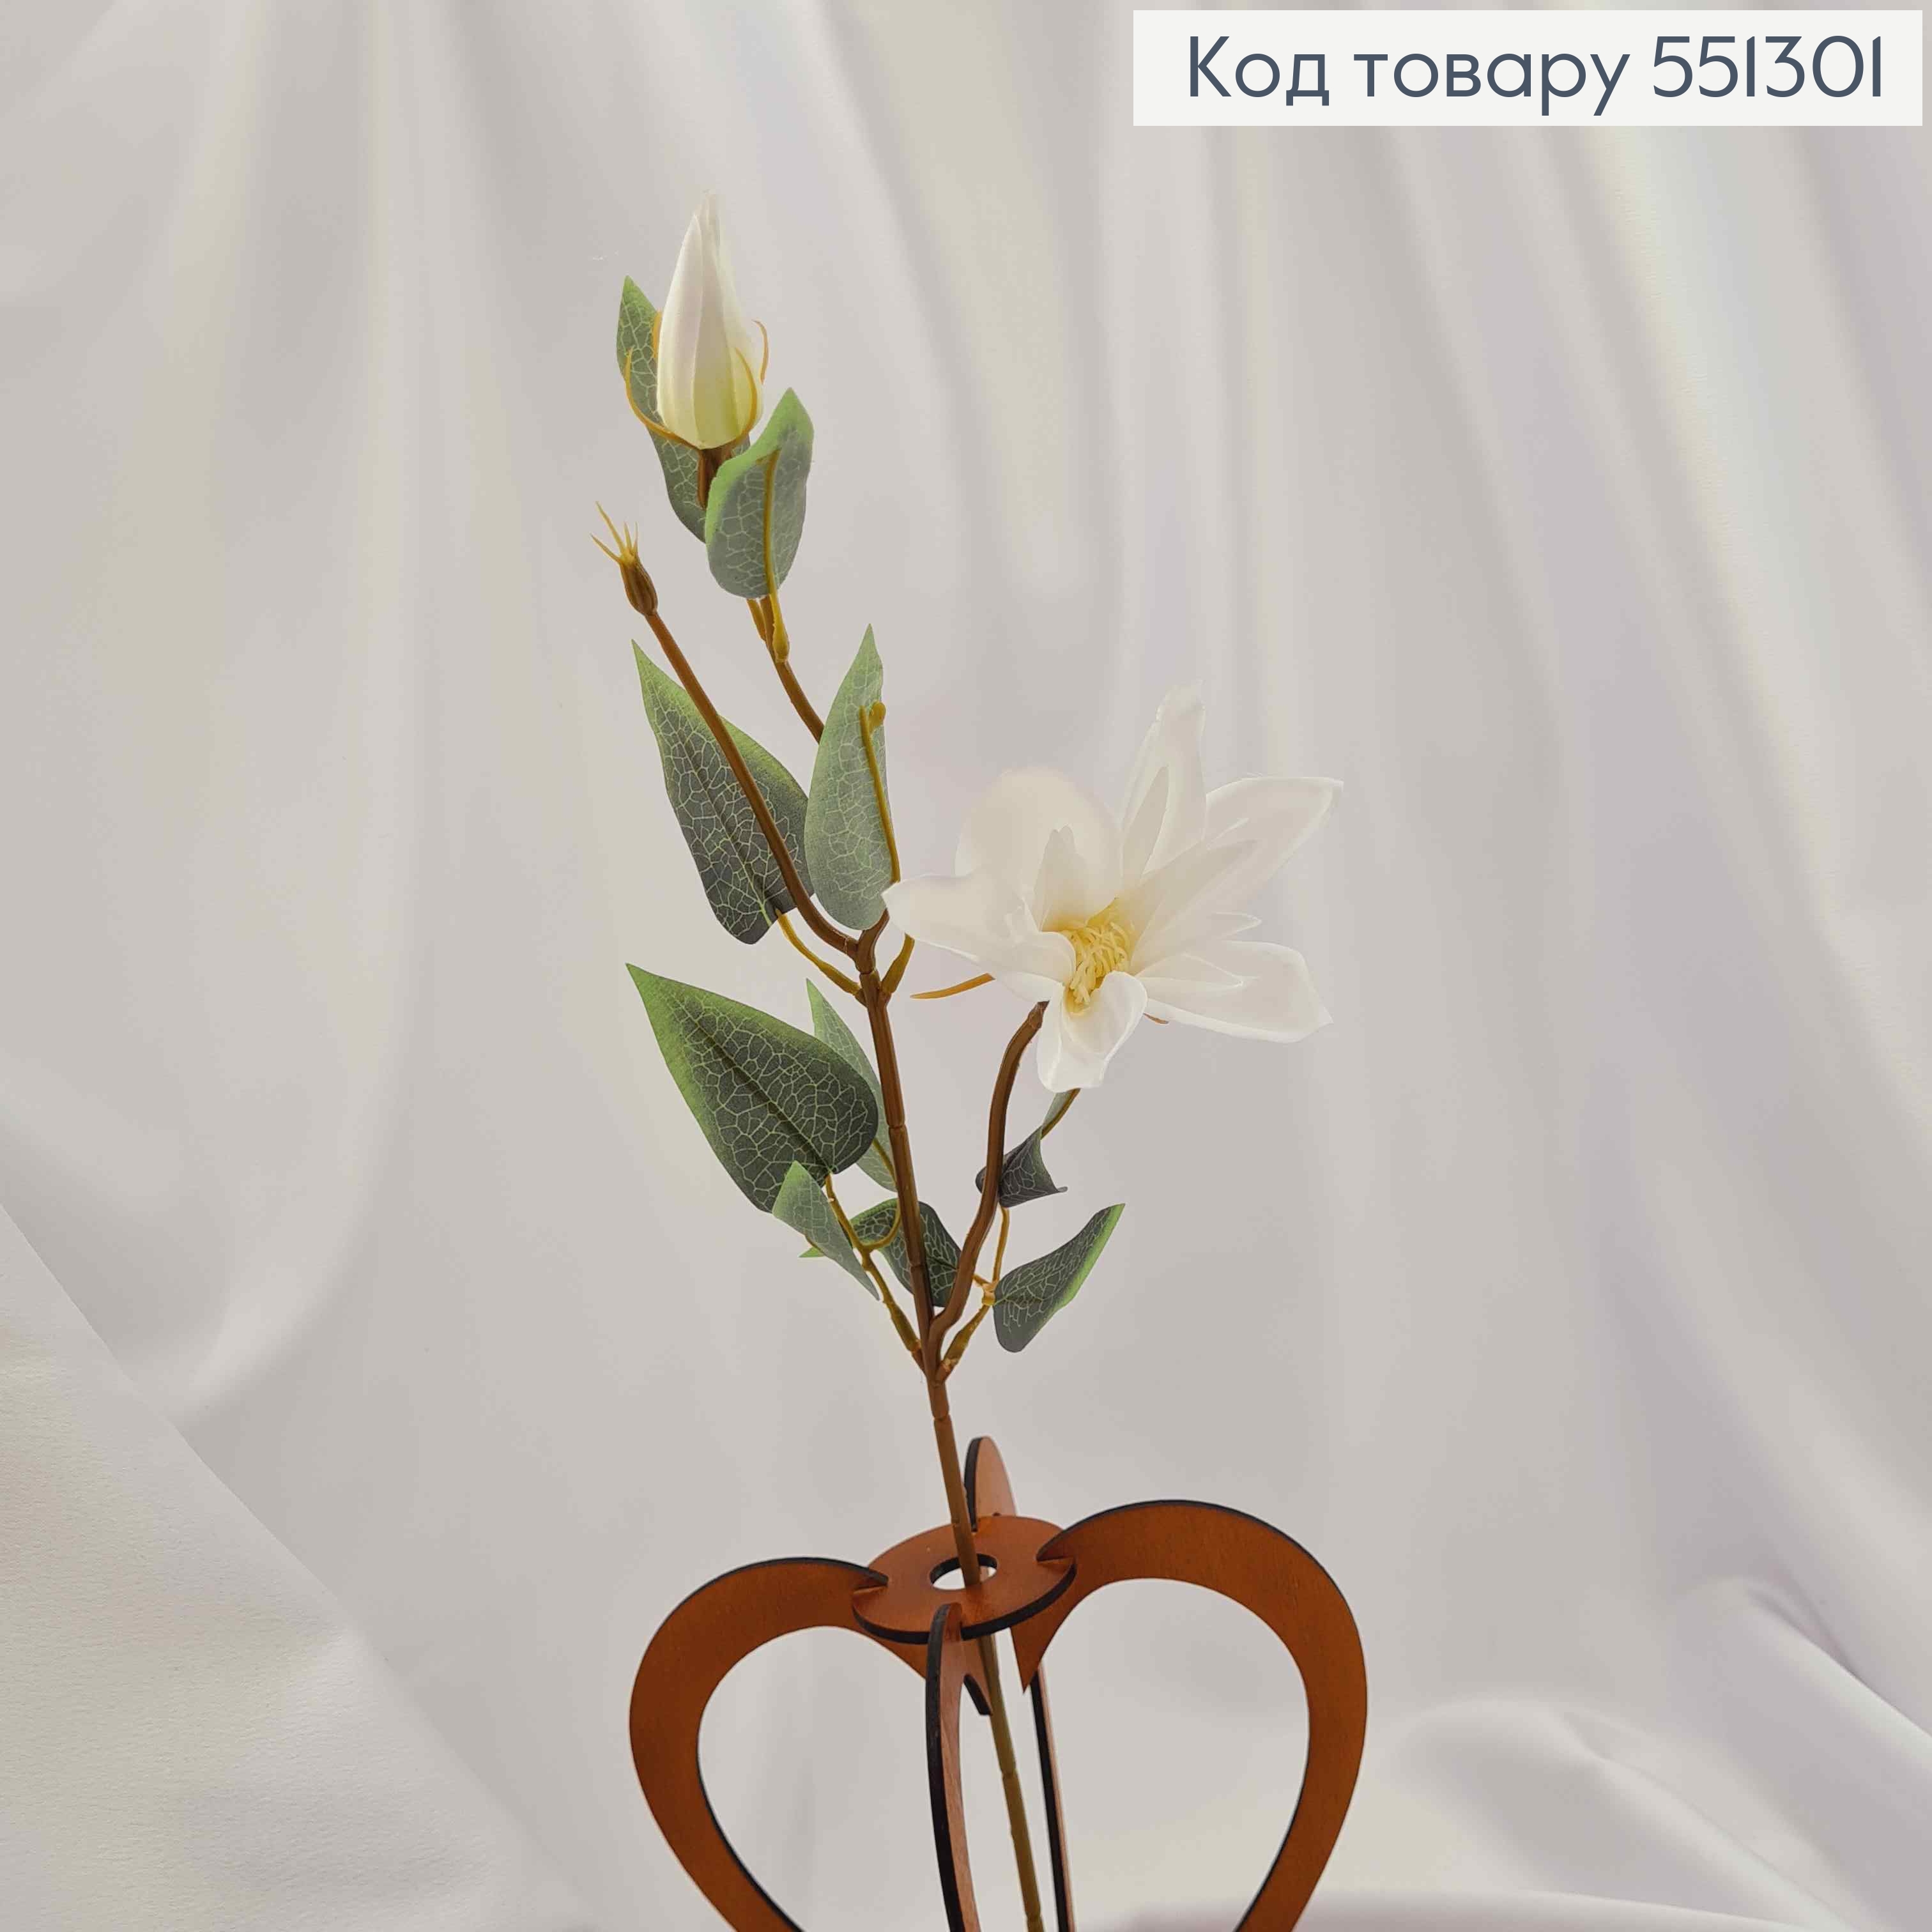 Штучні квіти, гілочка Еустоми , БІЛОГО кольору, 1 квітка + 1 бутон, на металевому стержні, 47см 551301 фото 2